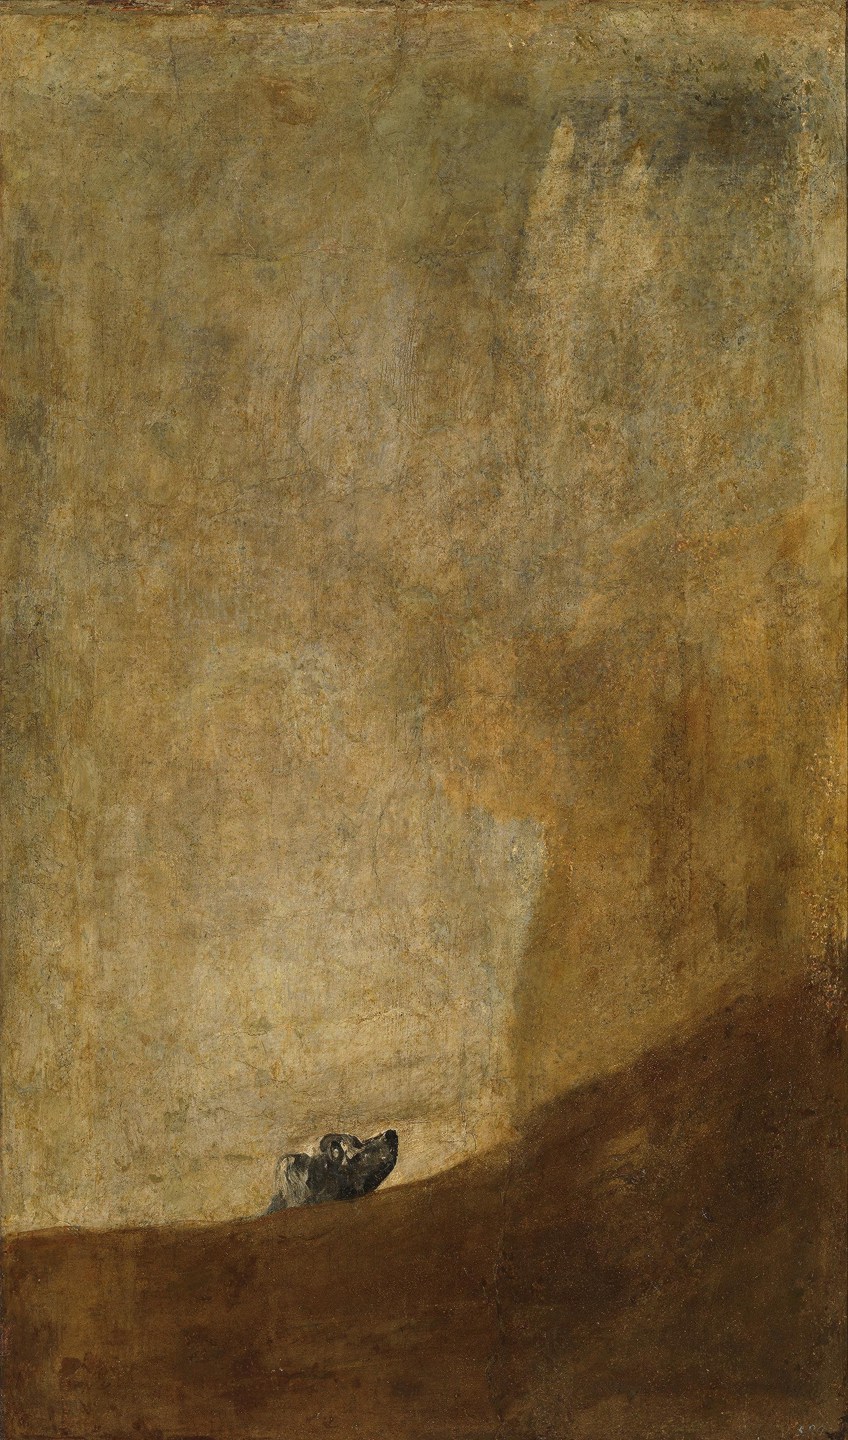 Pinturas oscuras de Francisco Goya